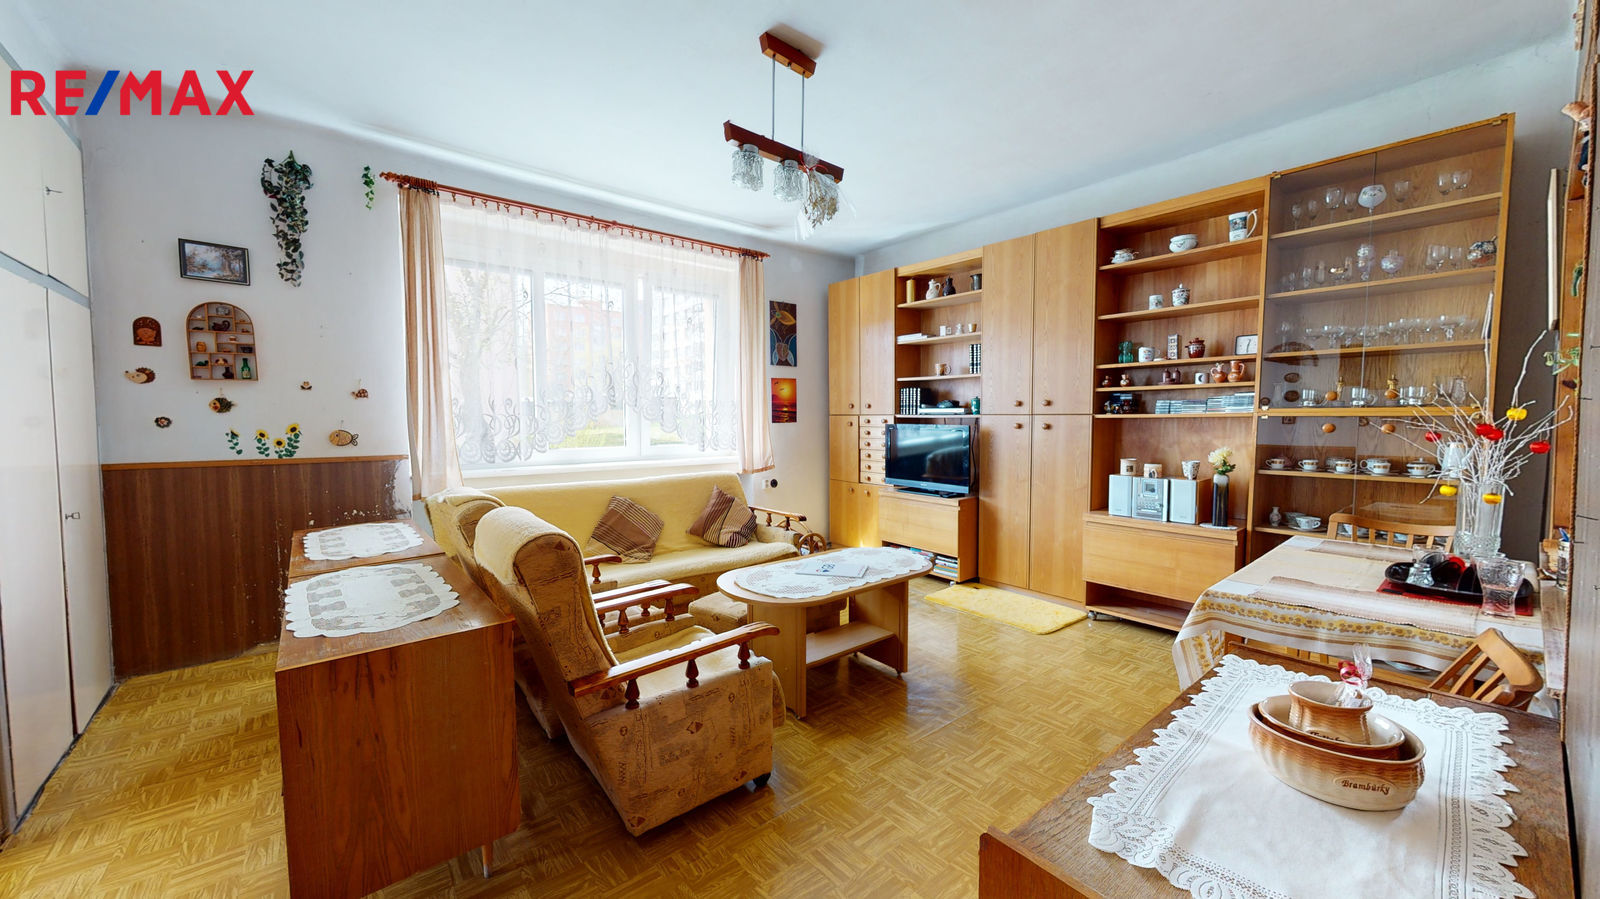 Prodej bytu 4+1 v osobním vlastnictví, 87 m2, Ústí nad Labem